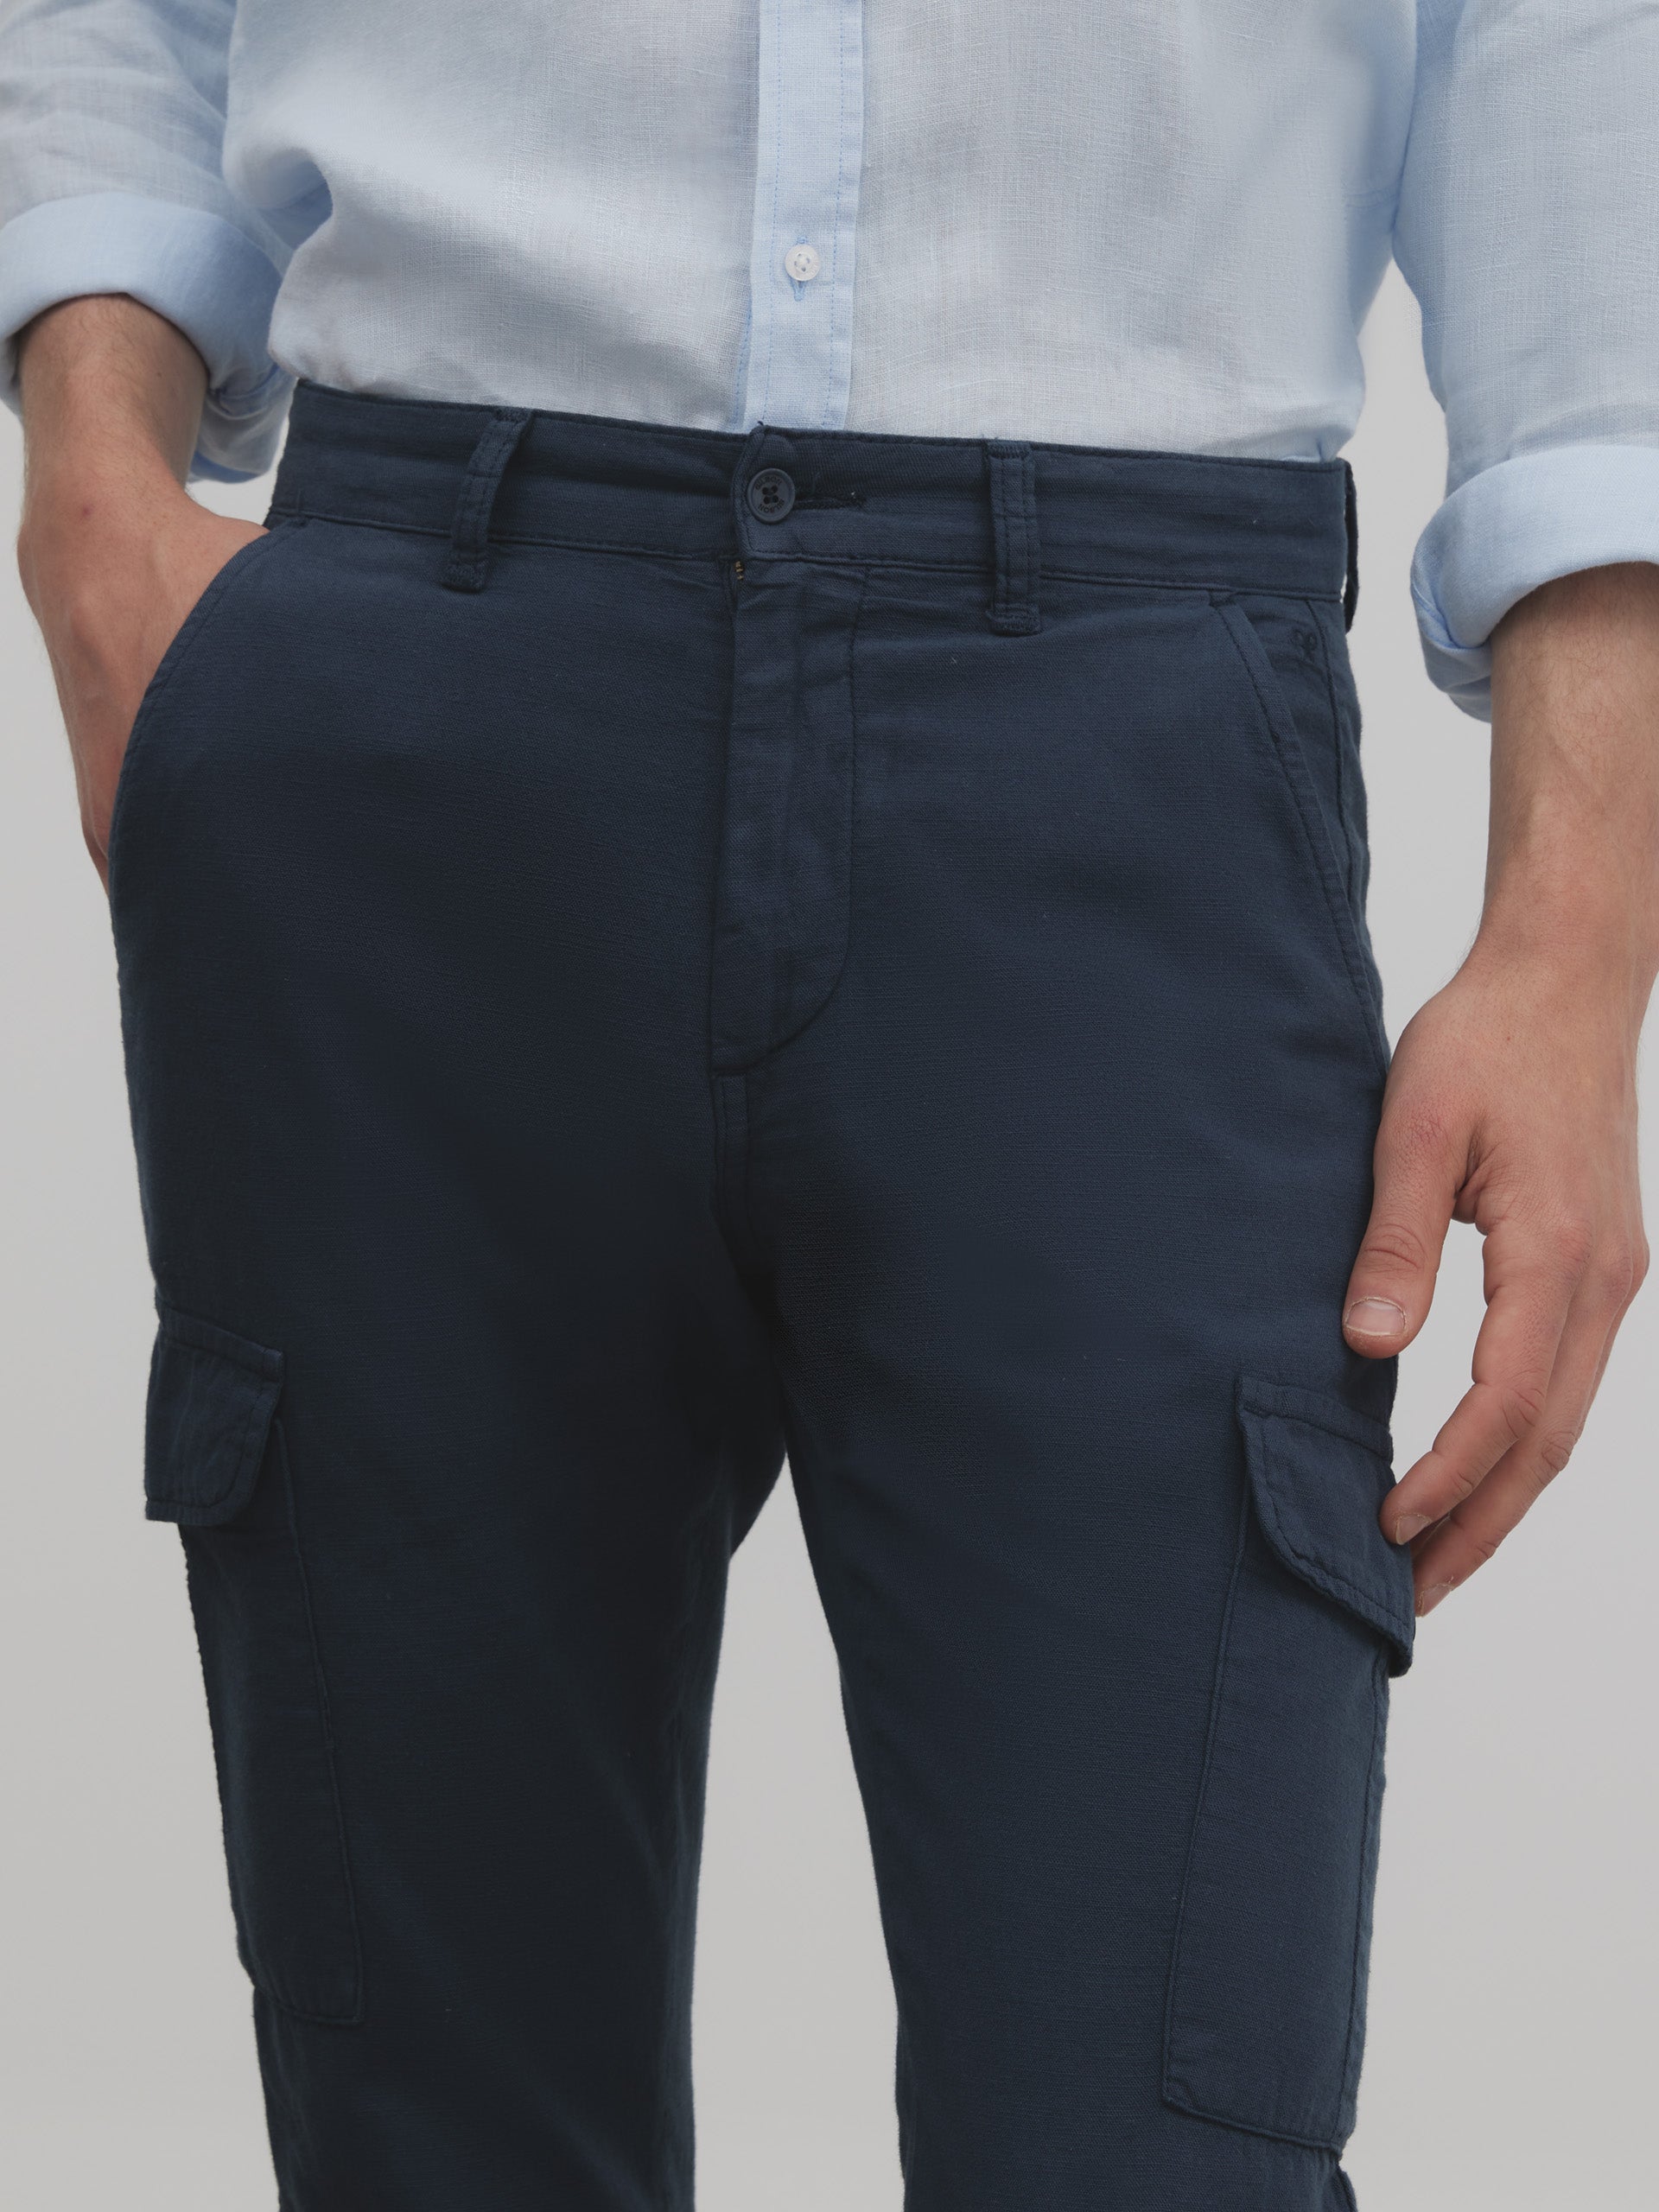 Pantalon sport cargo lino azul indigo